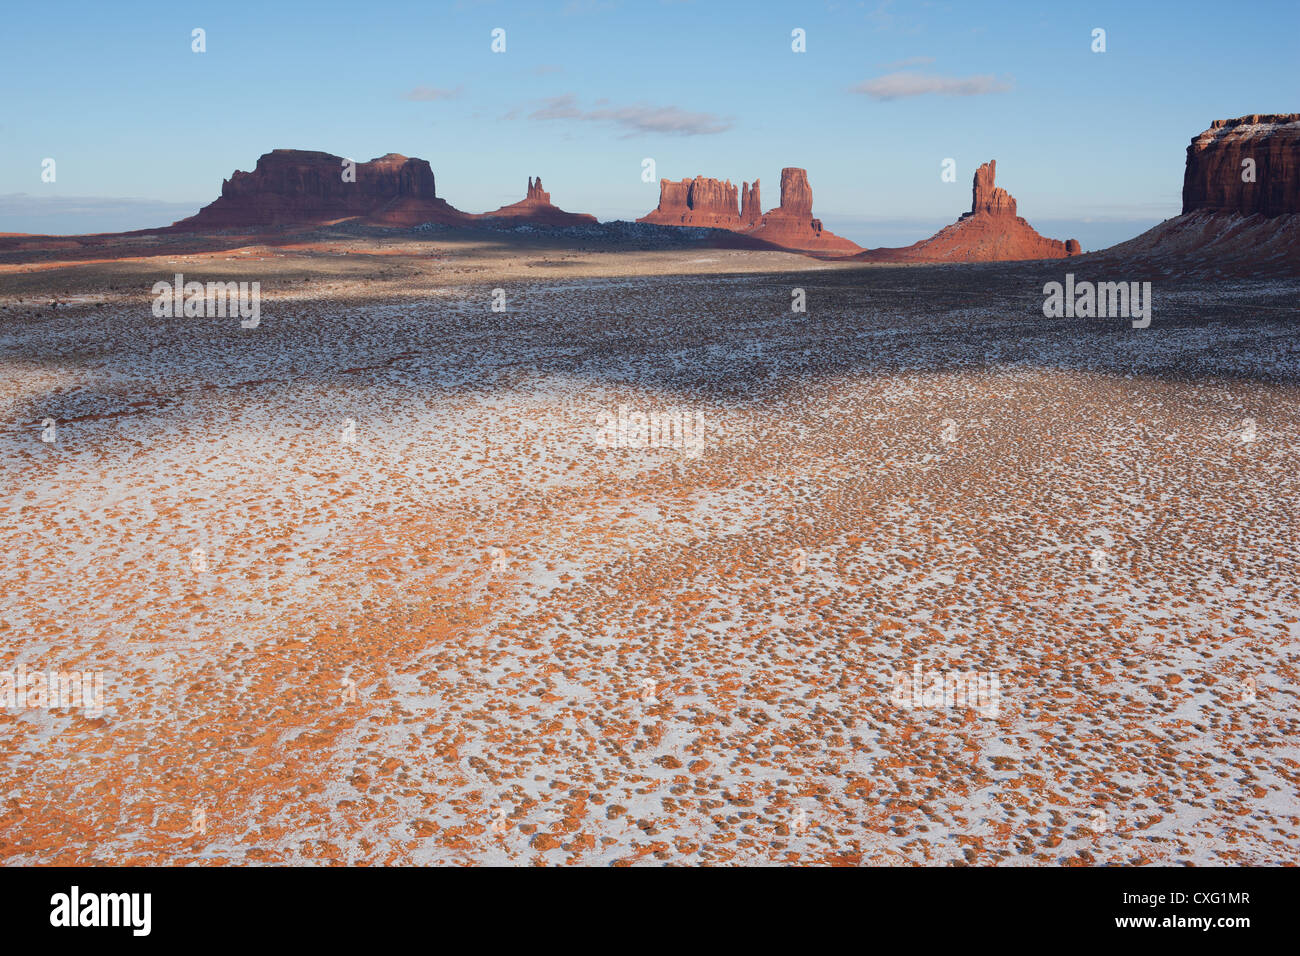 LUFTAUFNAHME. Rote Sandsteinbütten und Mesas mit dem ersten Schnee der Saison. Grenze zwischen Süd-Utah und Nord-Arizona, Navajo-Indianerland, USA. Stockfoto